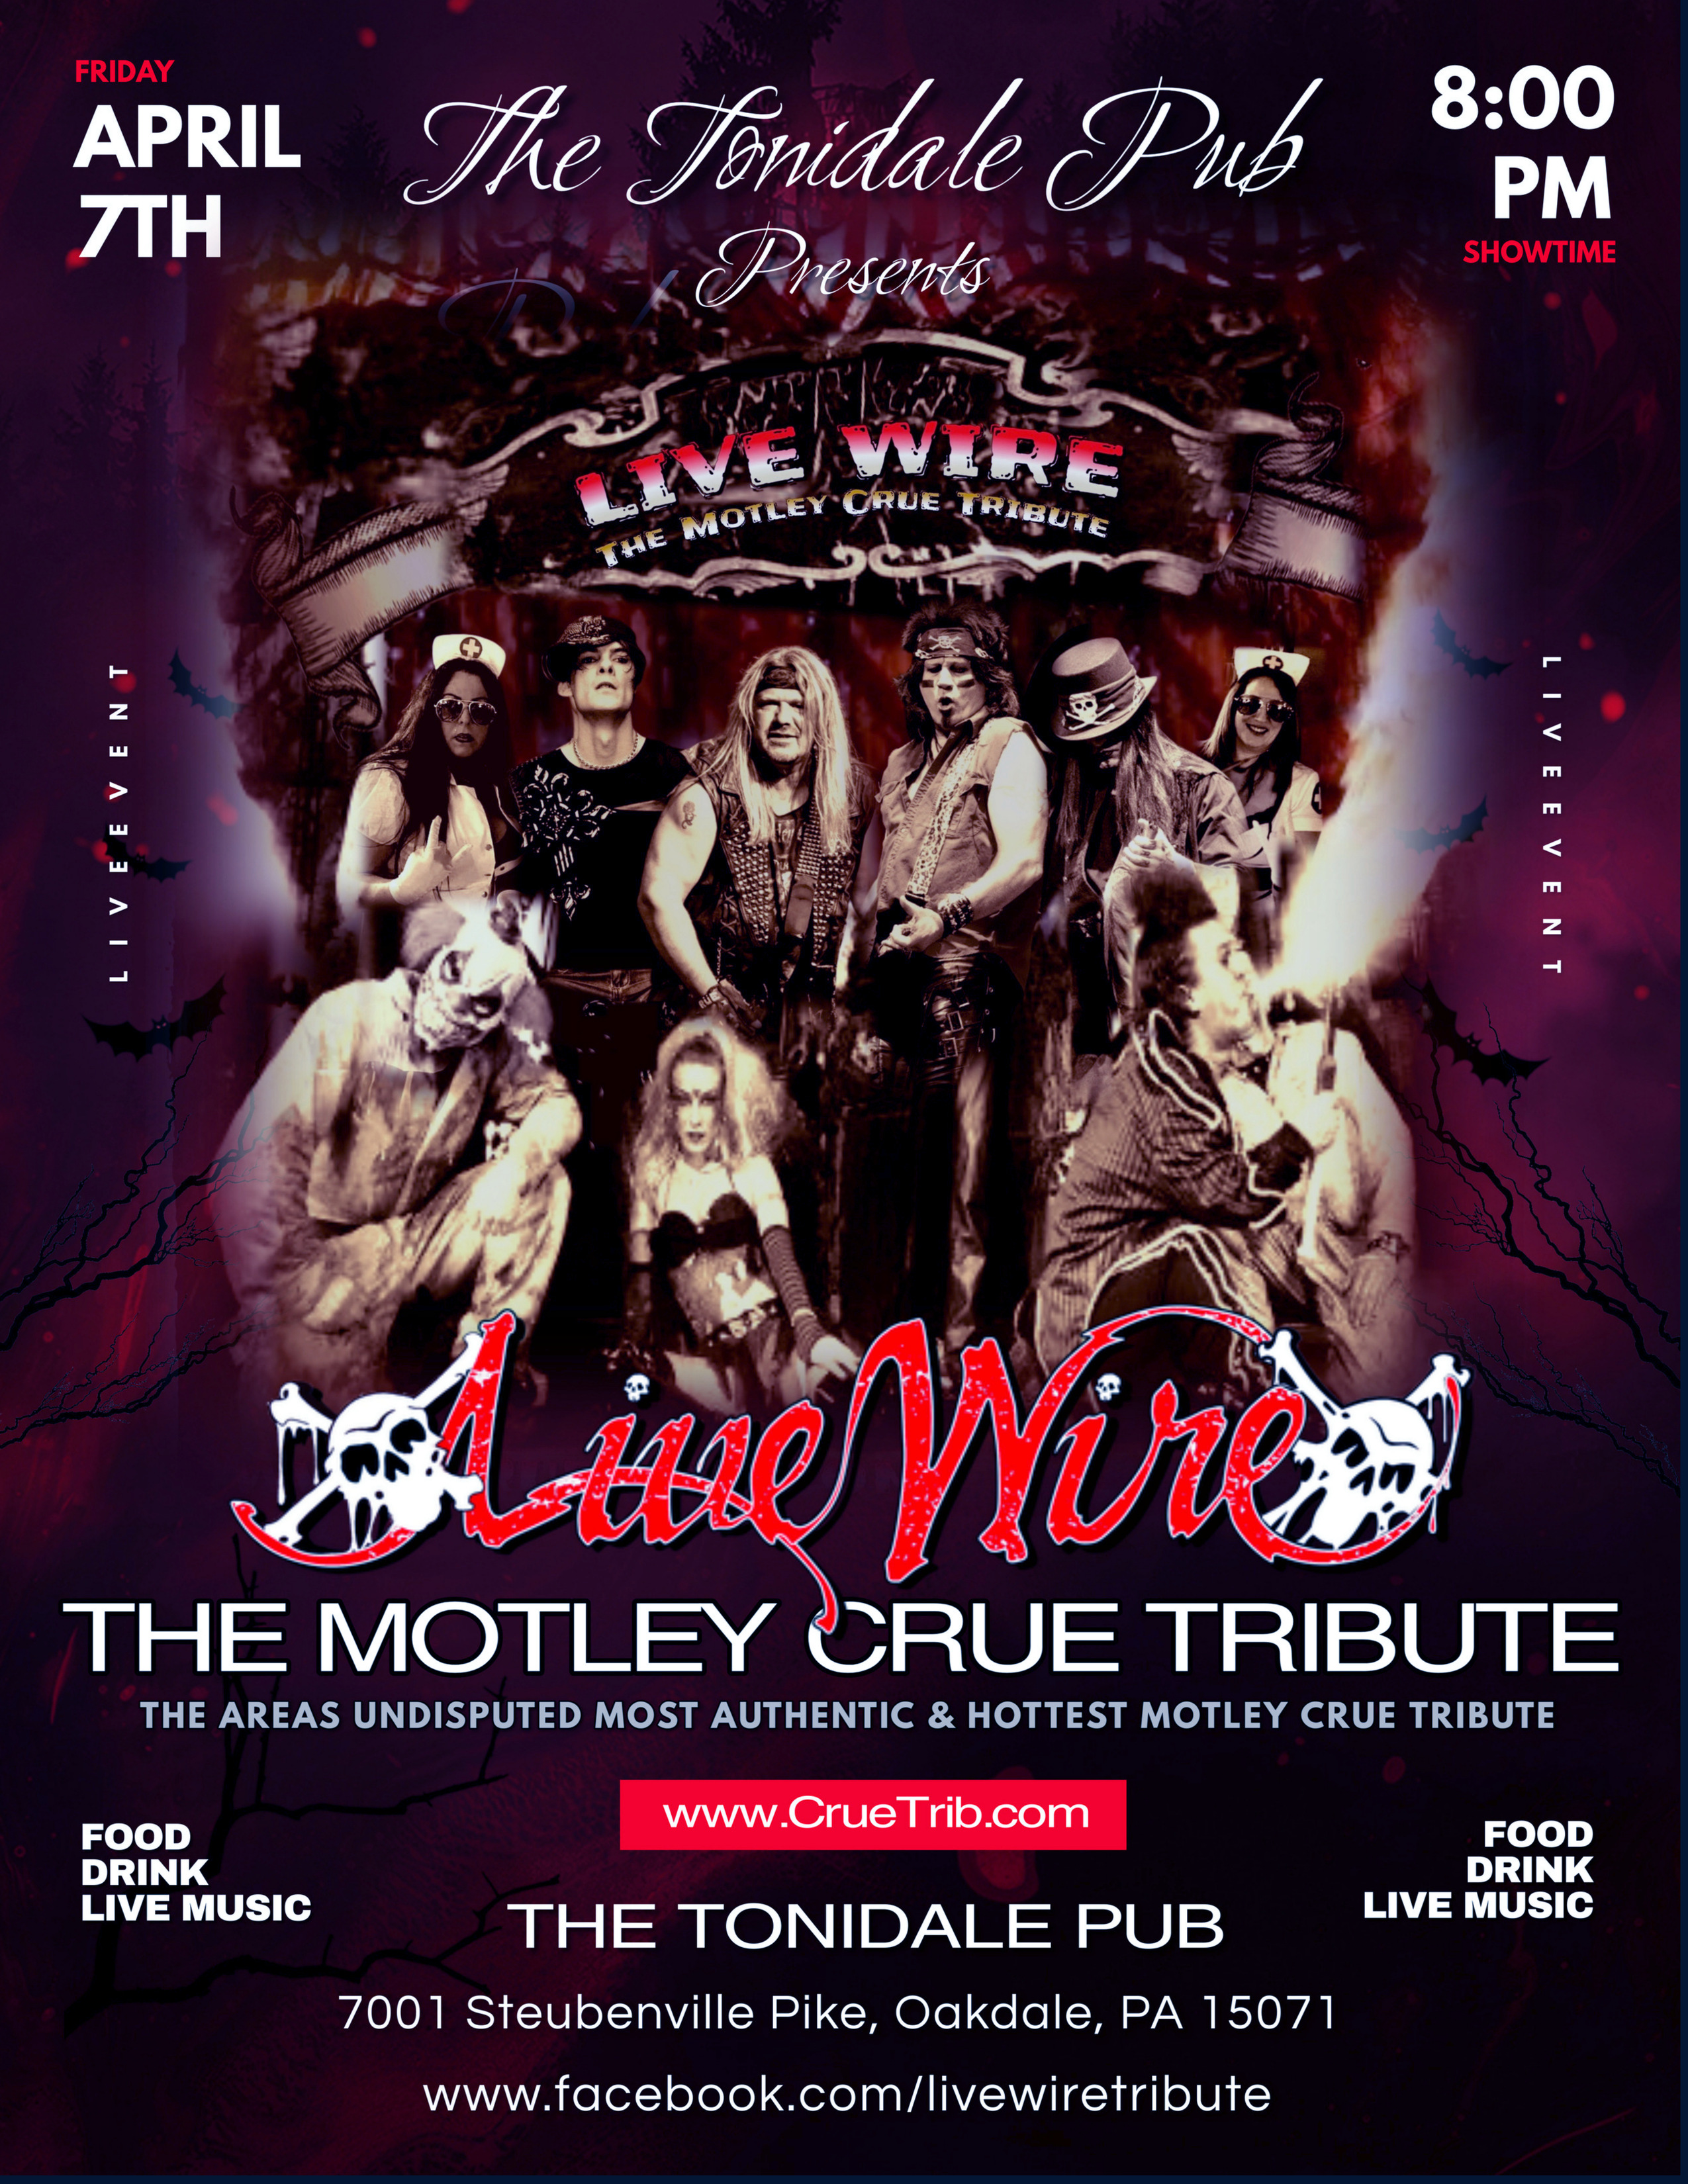 Feb 3, Live Wire- (Motley Crue Tribute) at THE TONIDALE PUB